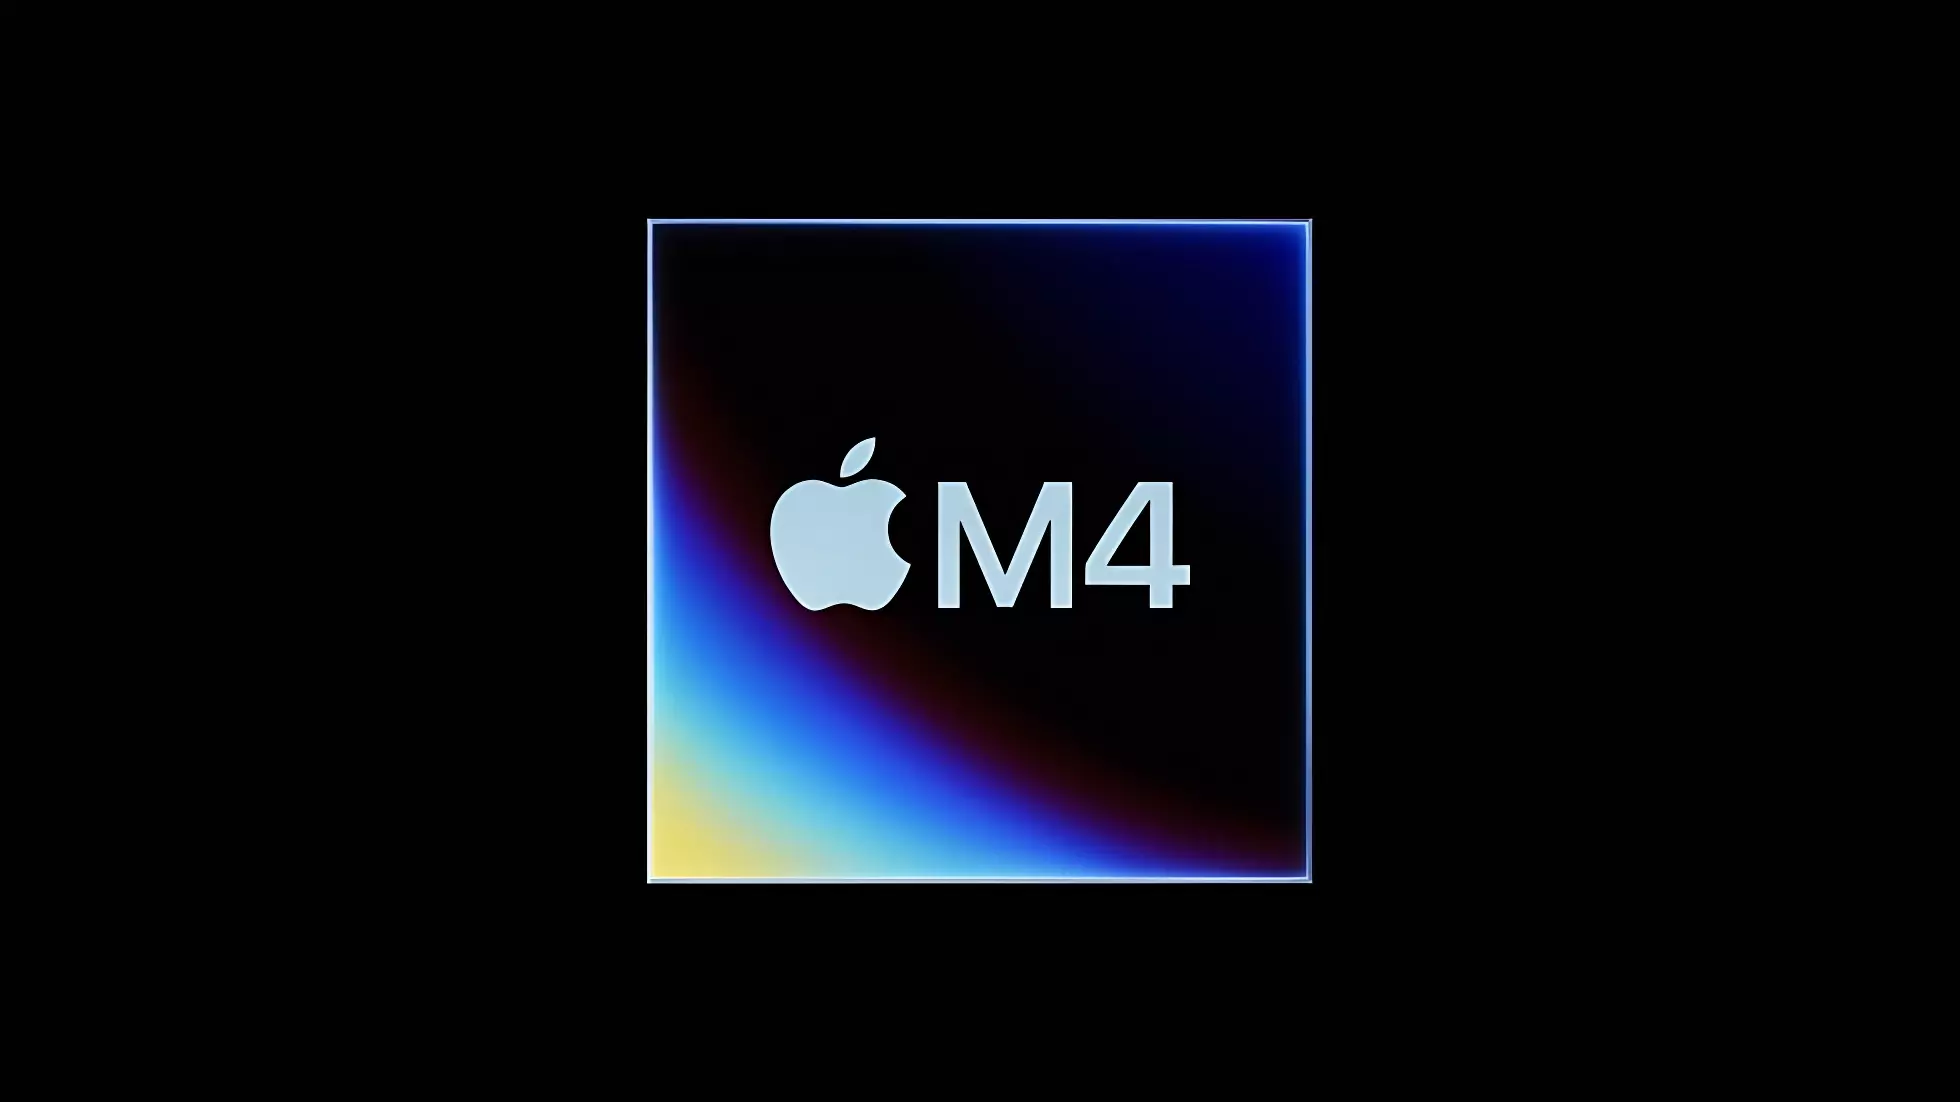 Apple презентовала iPad на чипе M4